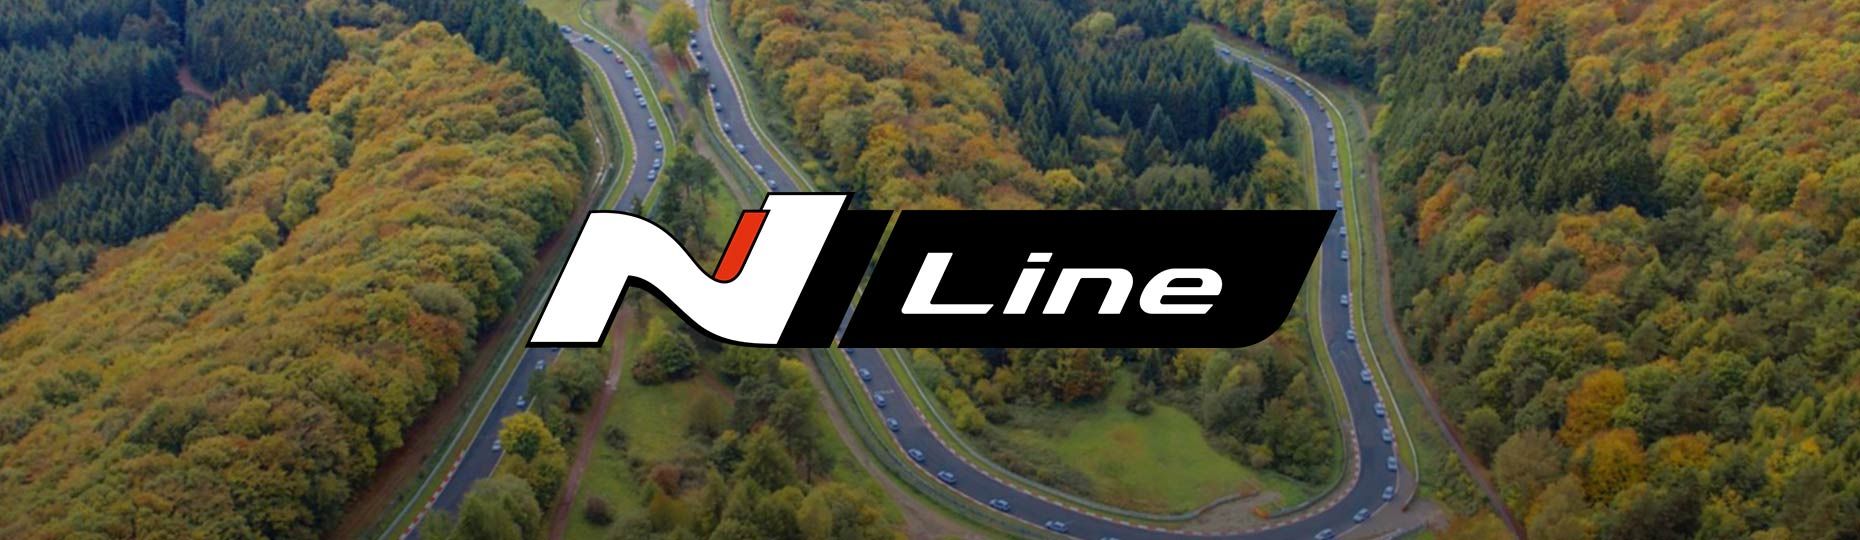 Hyundai-N-Line-track